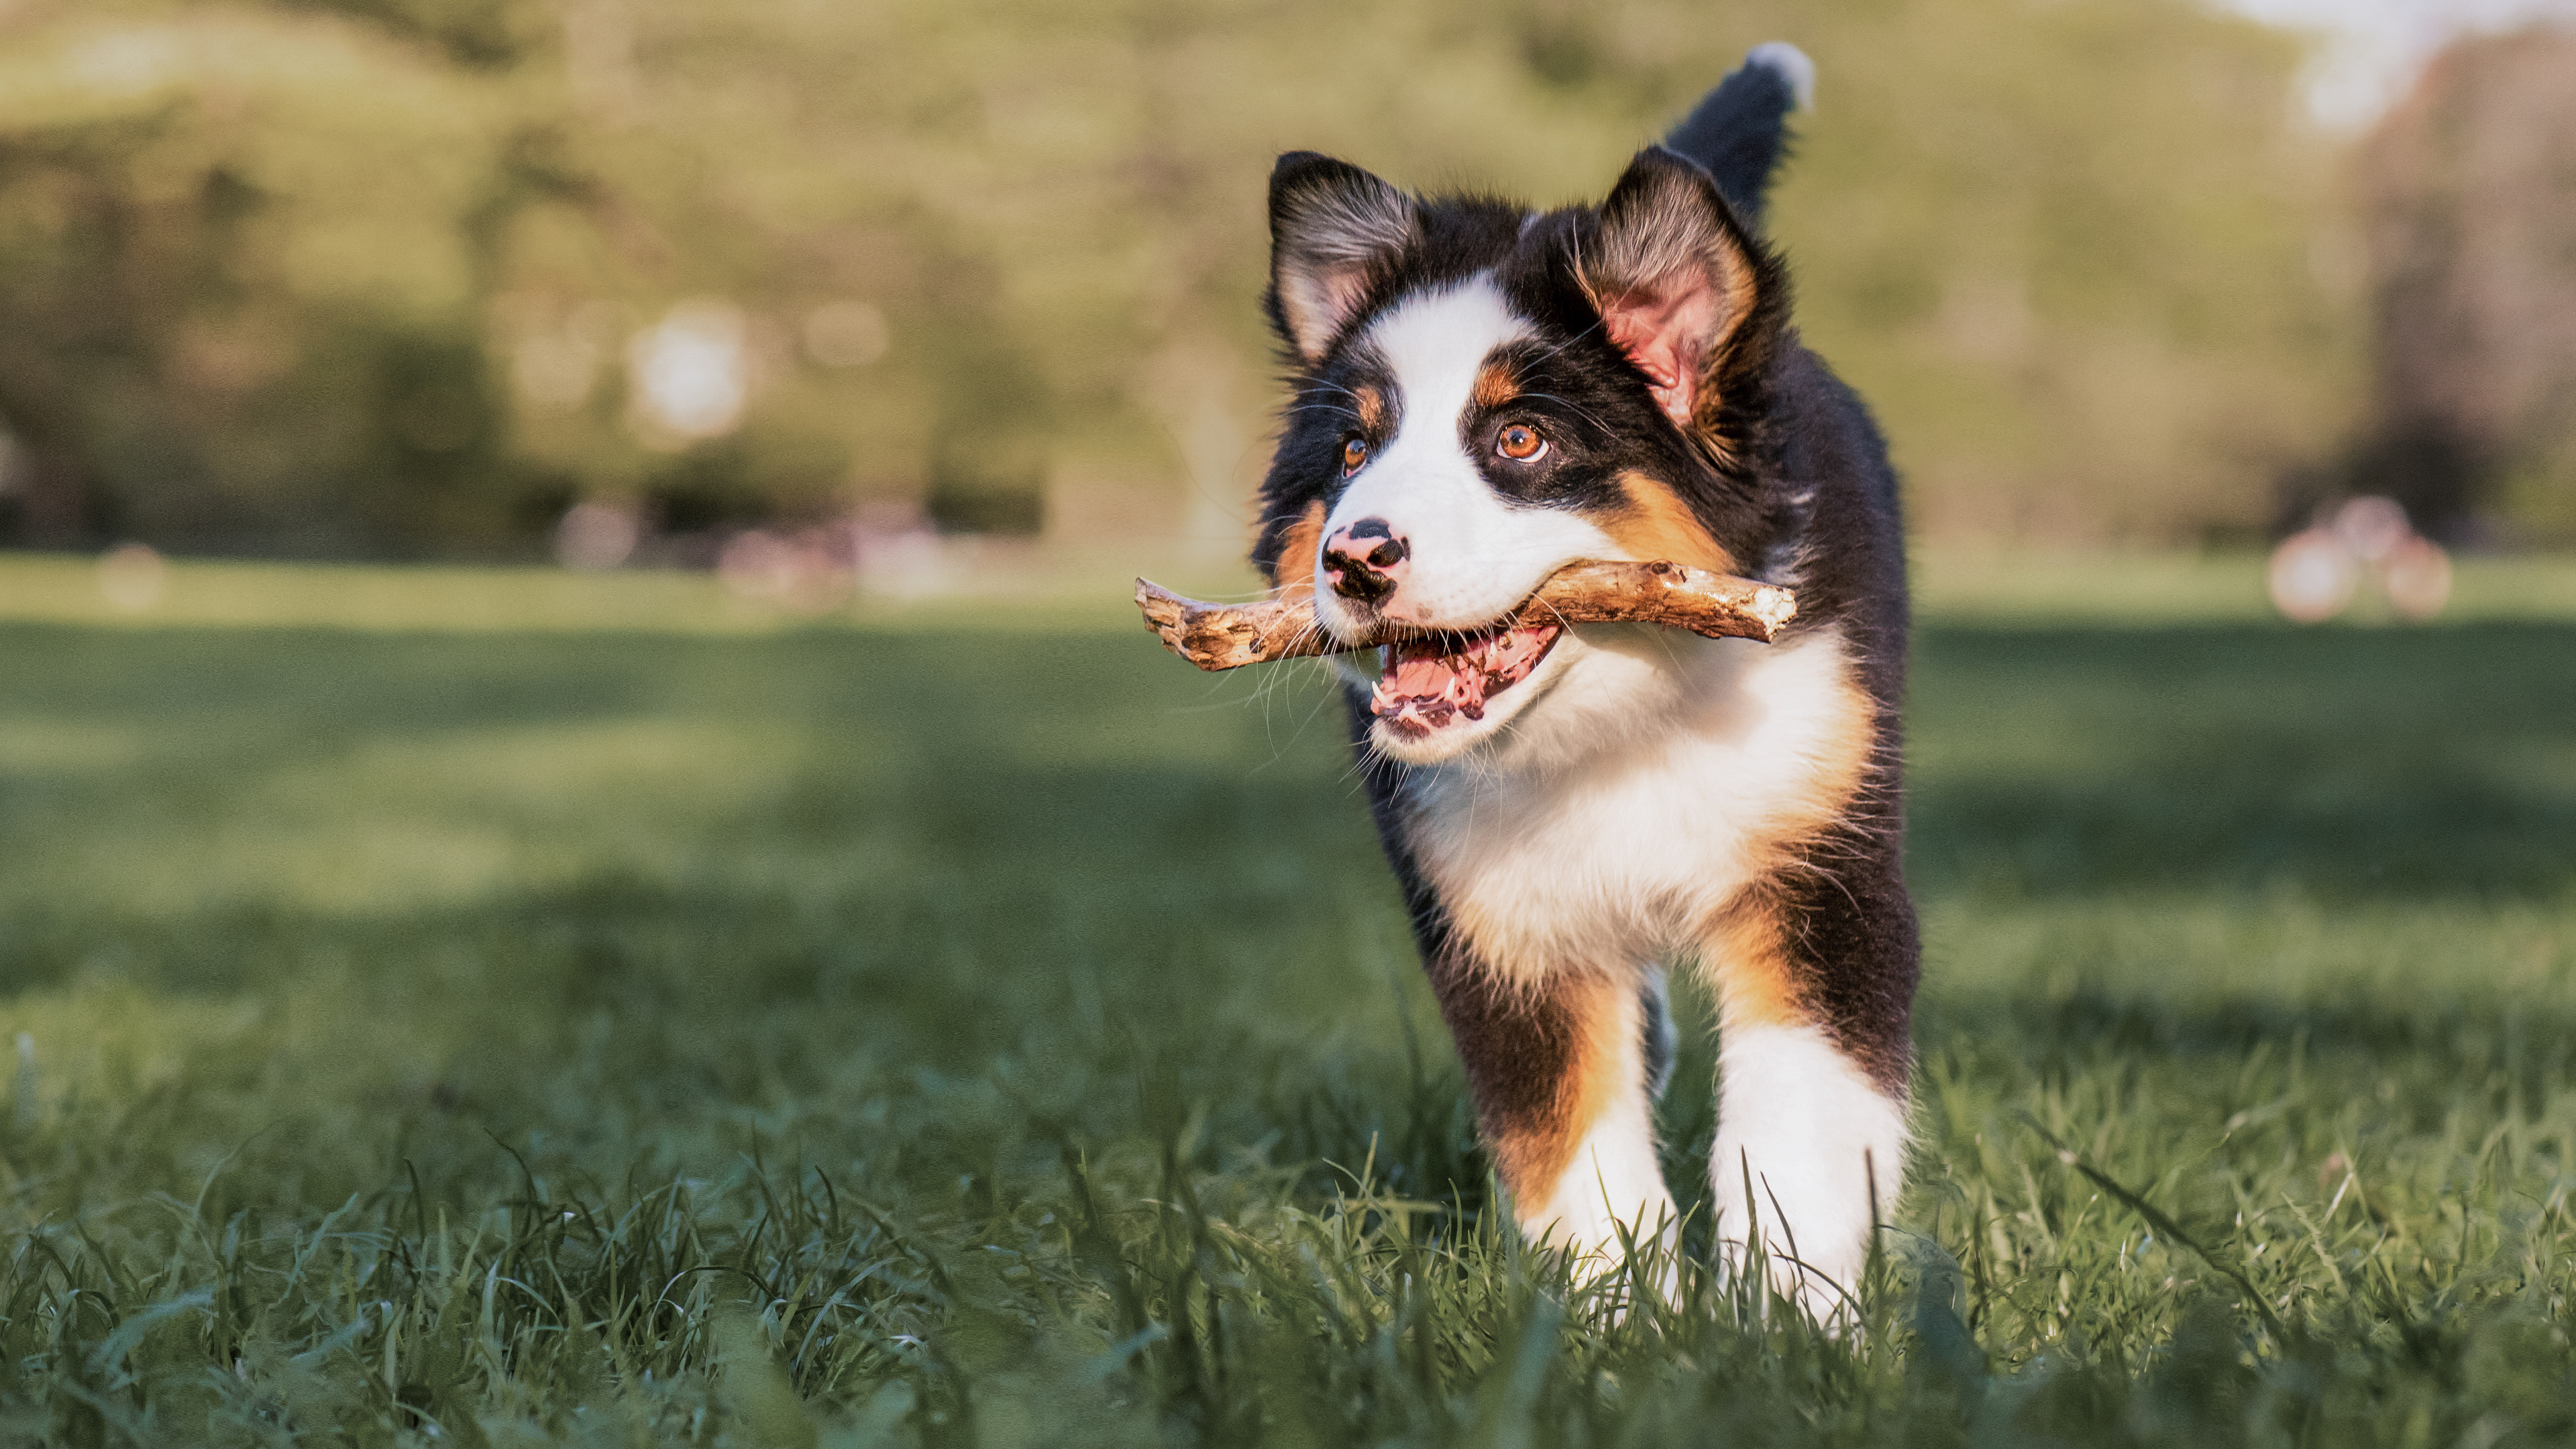 Australian Shepherd puppy running outdoors with a stick